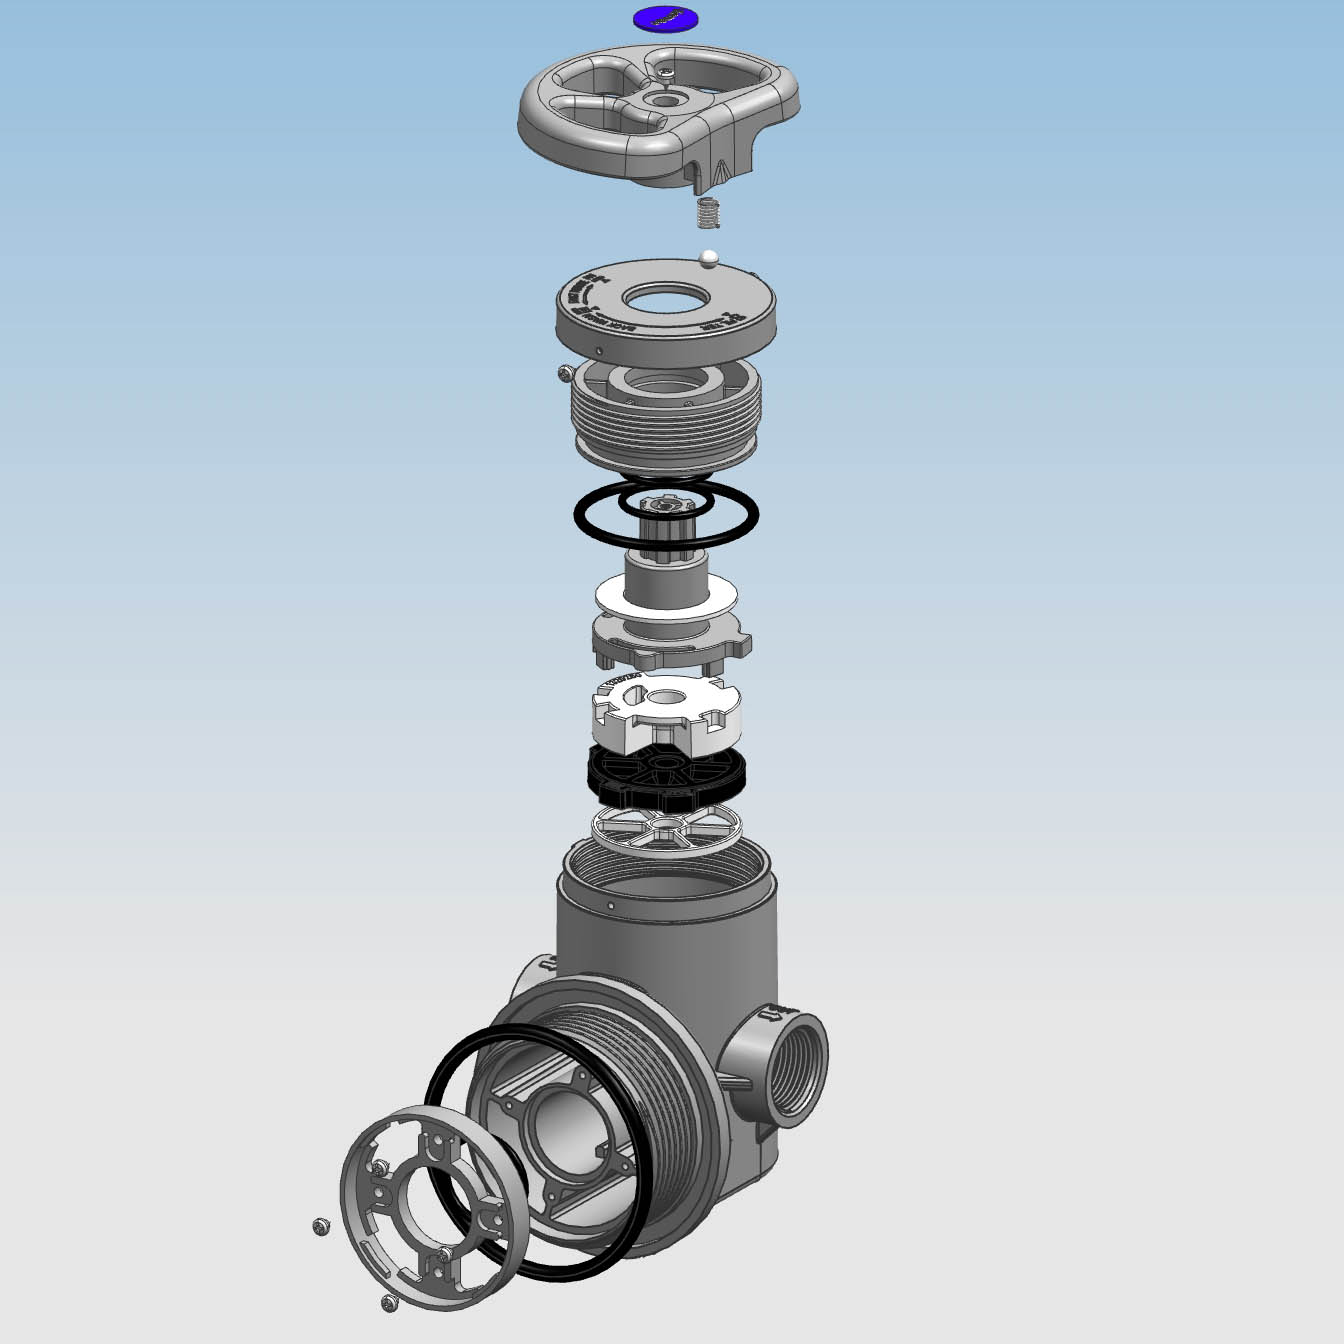 MF2-H 2 ton Manual water filter valve